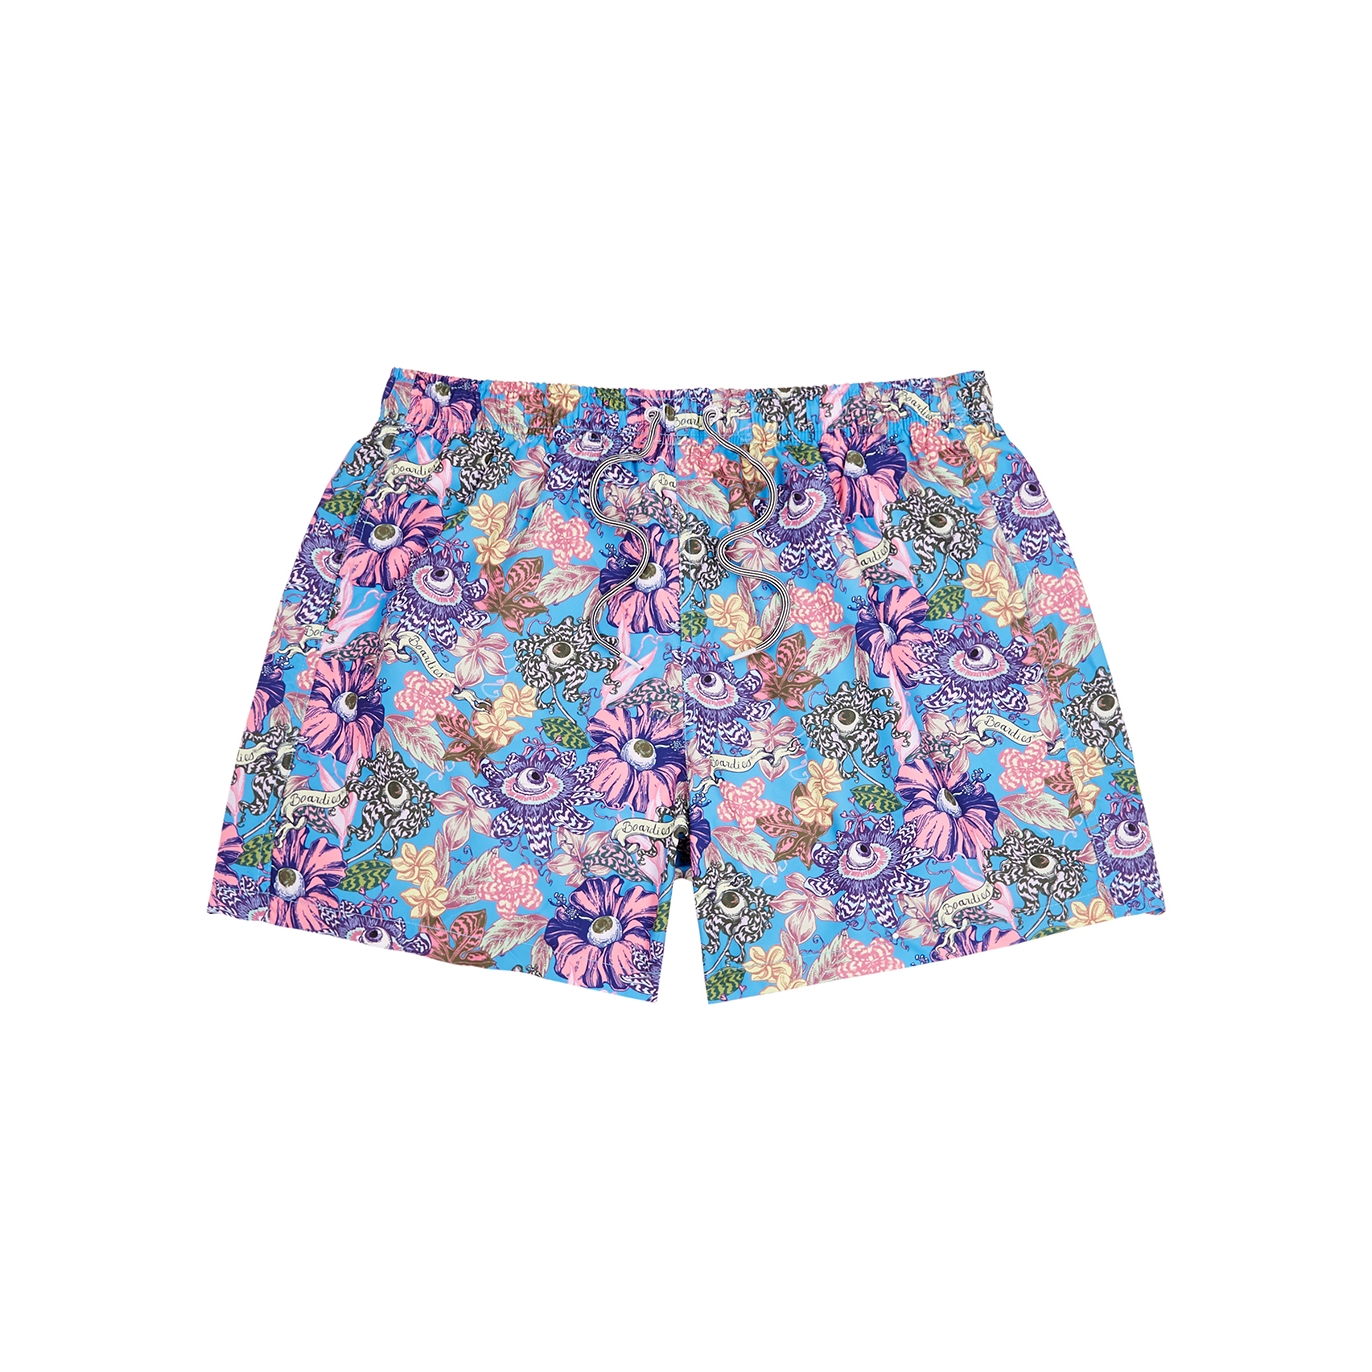 Boardies Tropical Eyeballs Printed Shell Swim Shorts